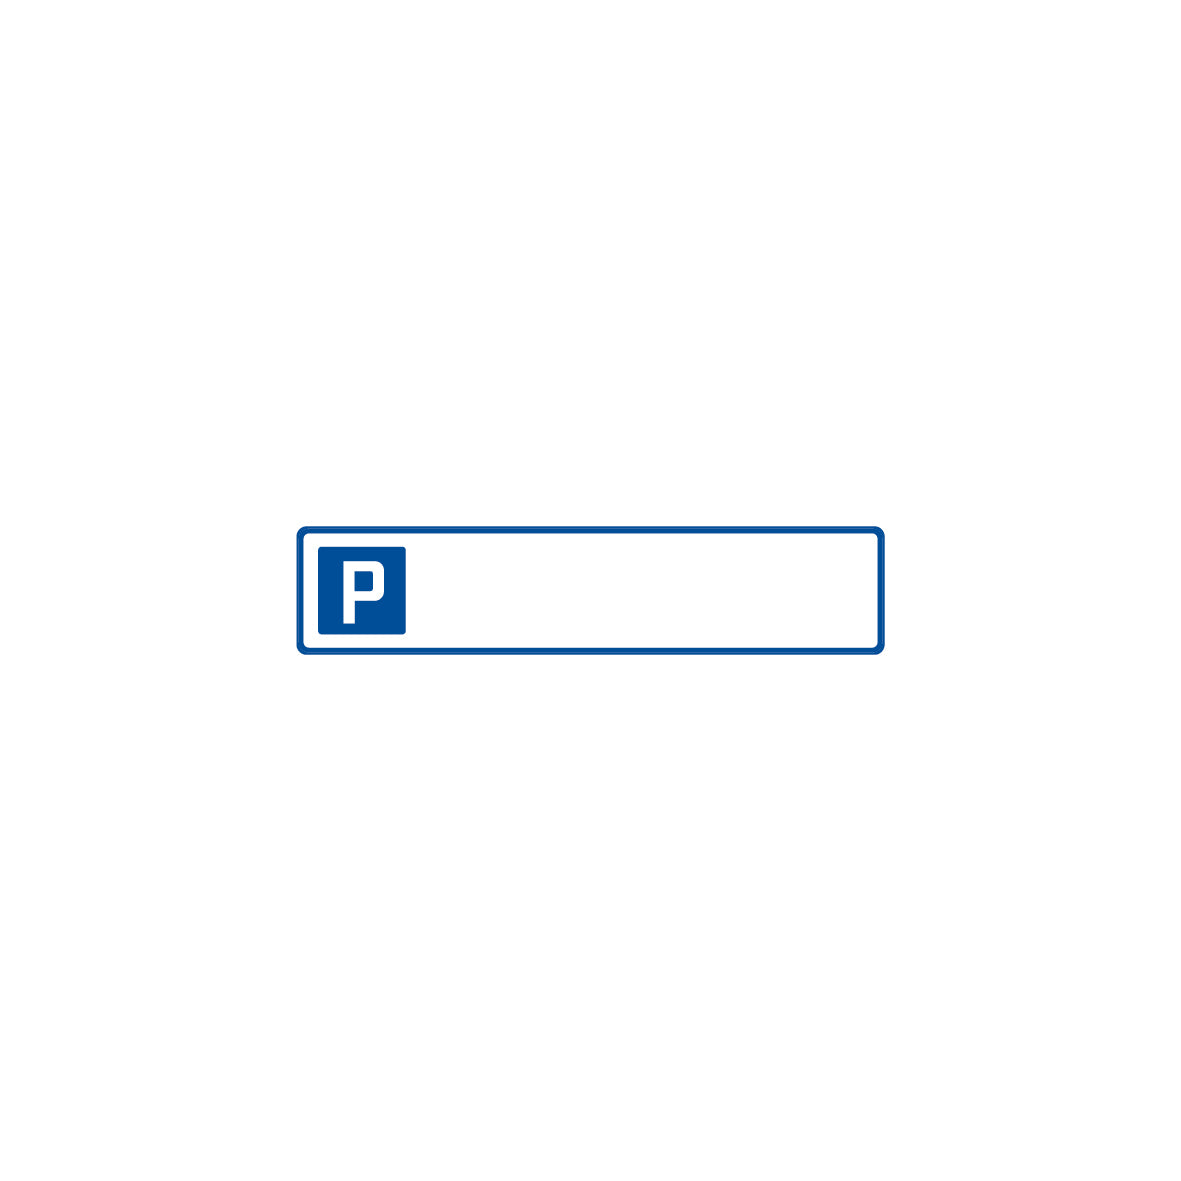 Parkplatzschild 7.0053, ohne Text, R1, 52 x 11 cm